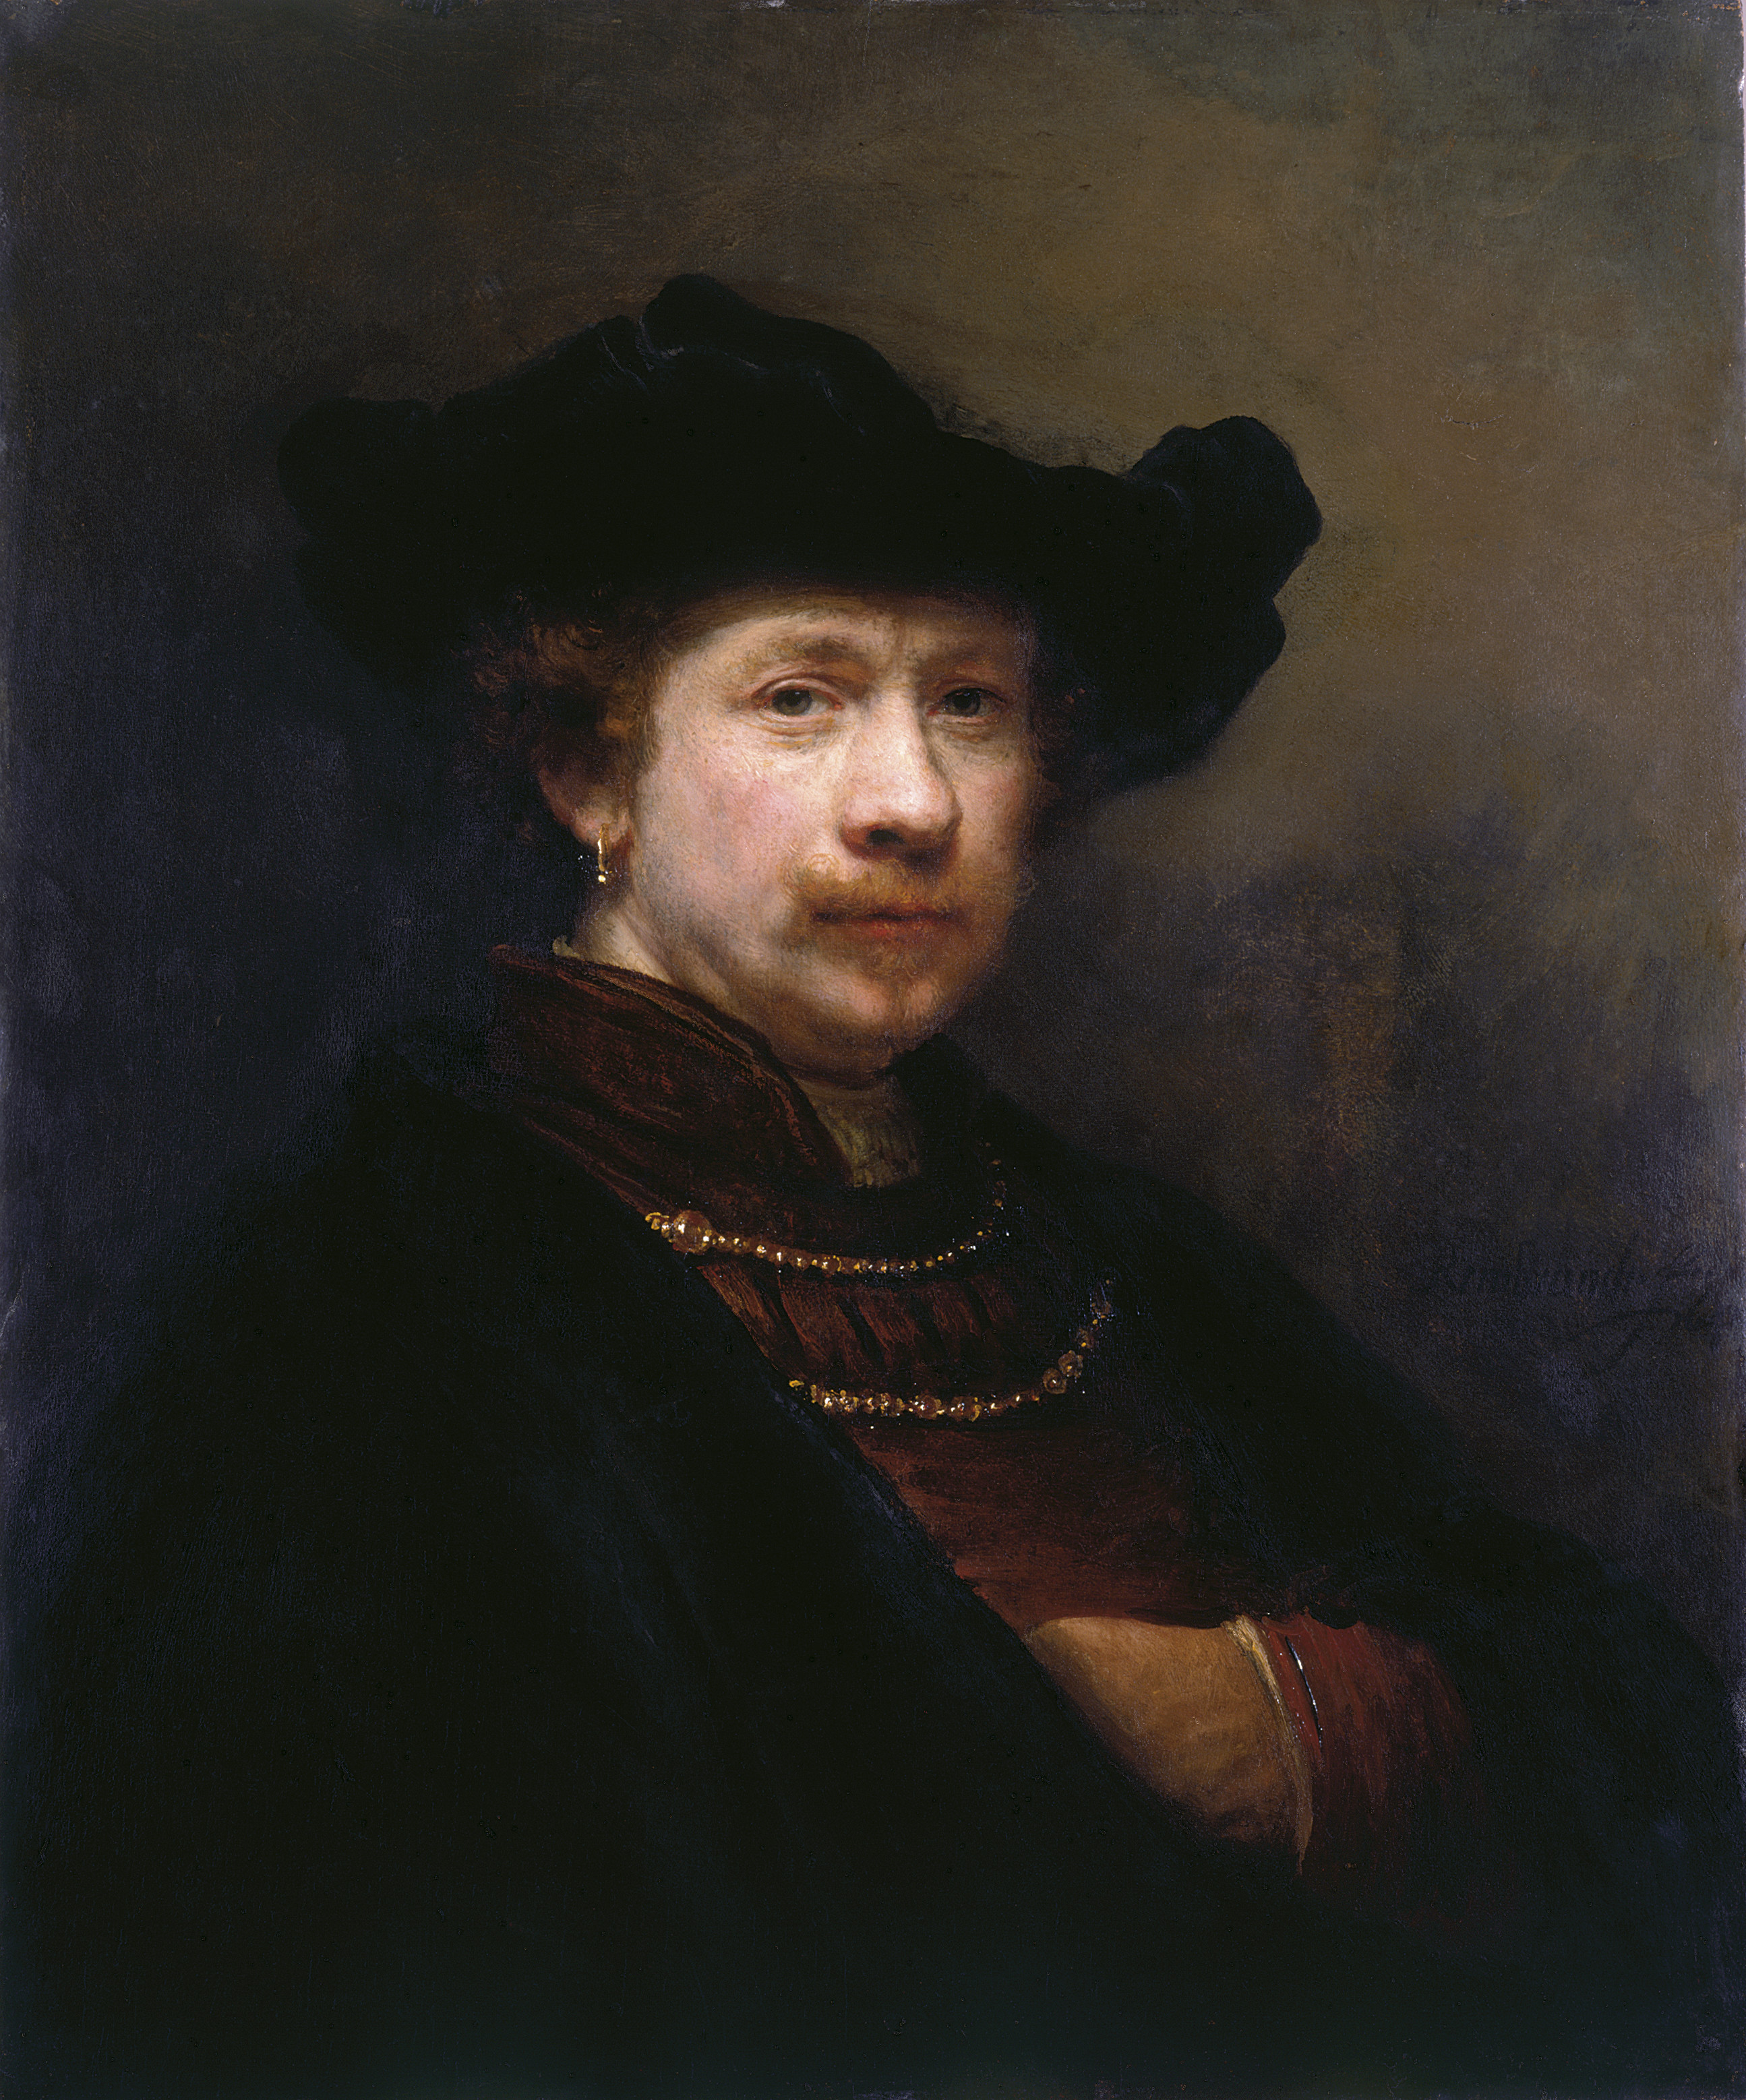 Selbstporträt mit flacher Kappe by Rembrandt van Rijn - 1642 Dulwich Picture Gallery